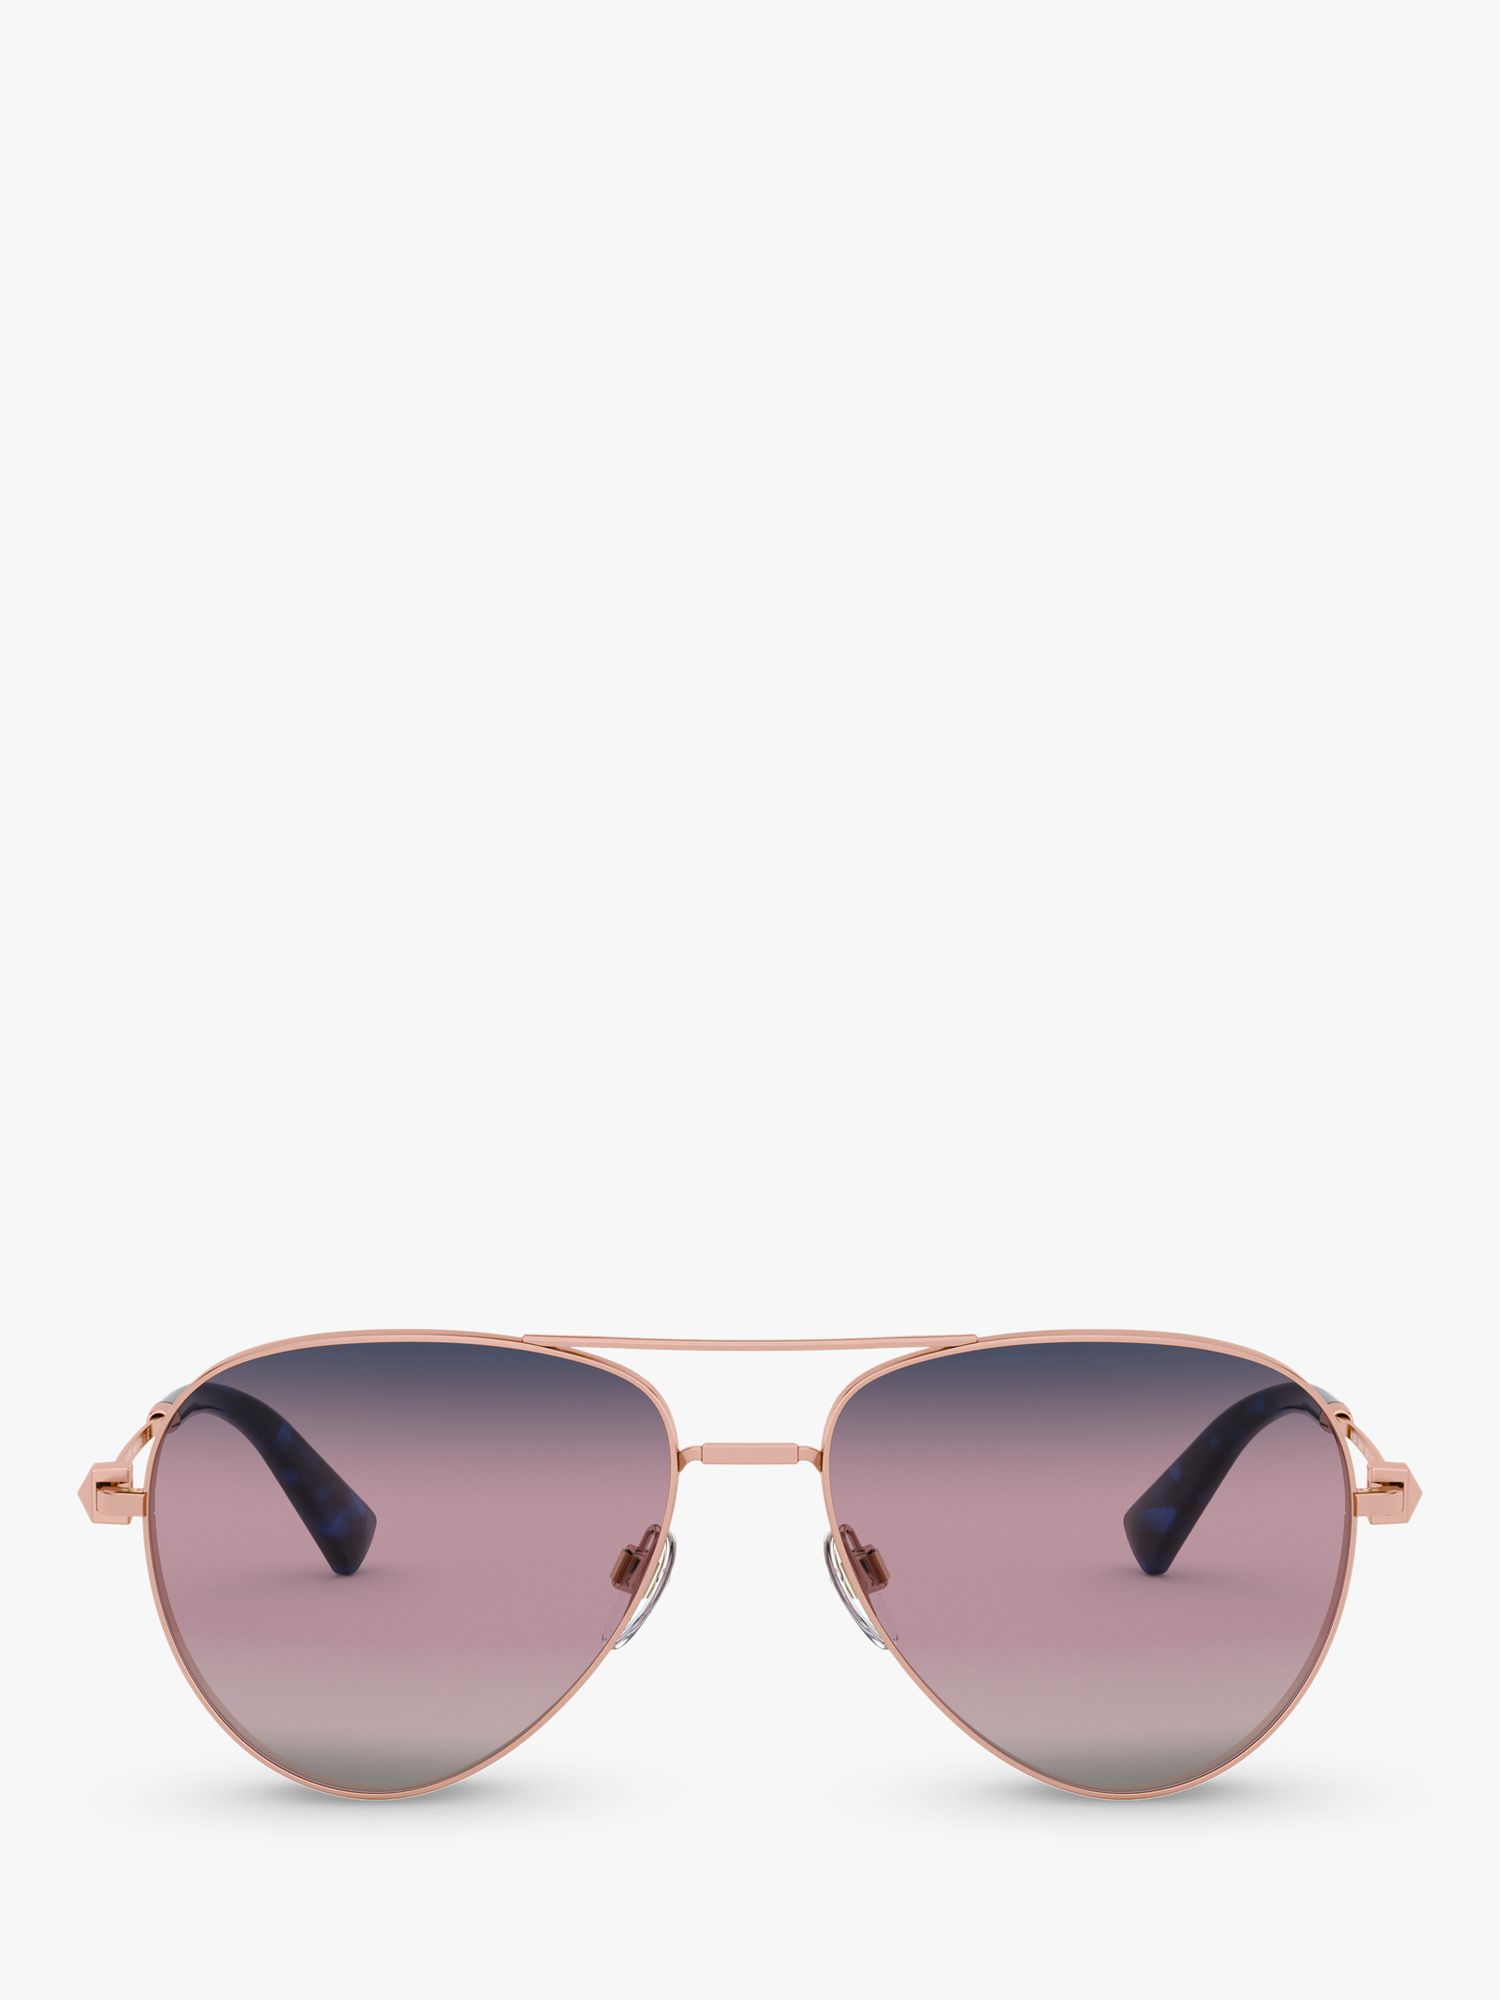 Valentino VA2034 Women's Aviator Sunglasses, Rose Gold/Pink Gradient at ...